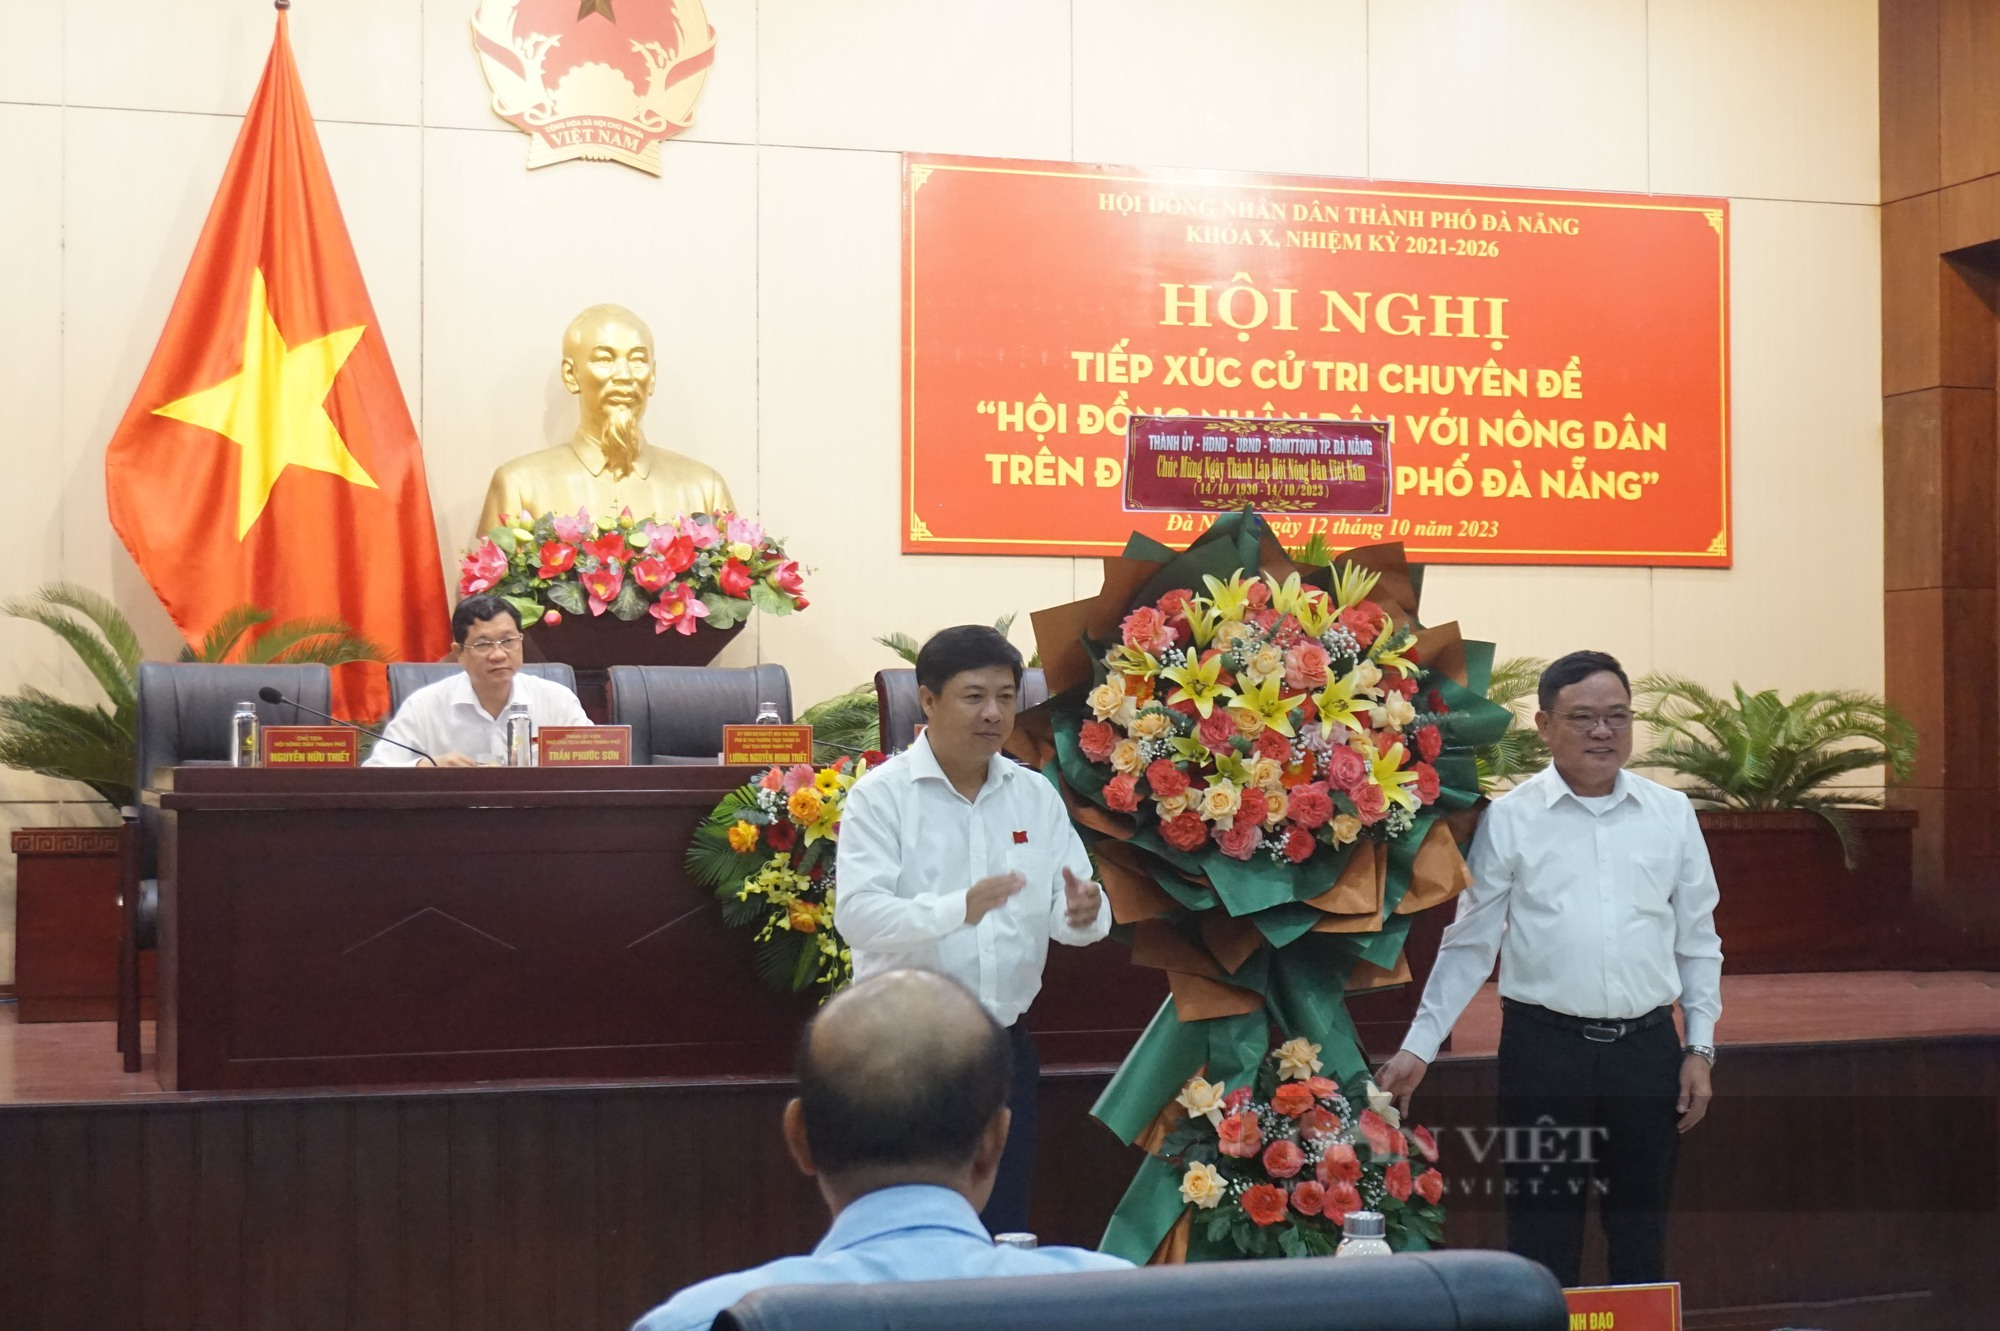 Đà Nẵng: Tiếp xúc cử tri chuyên đề Hội đồng nhân dân với nông dân thành phố - Ảnh 4.